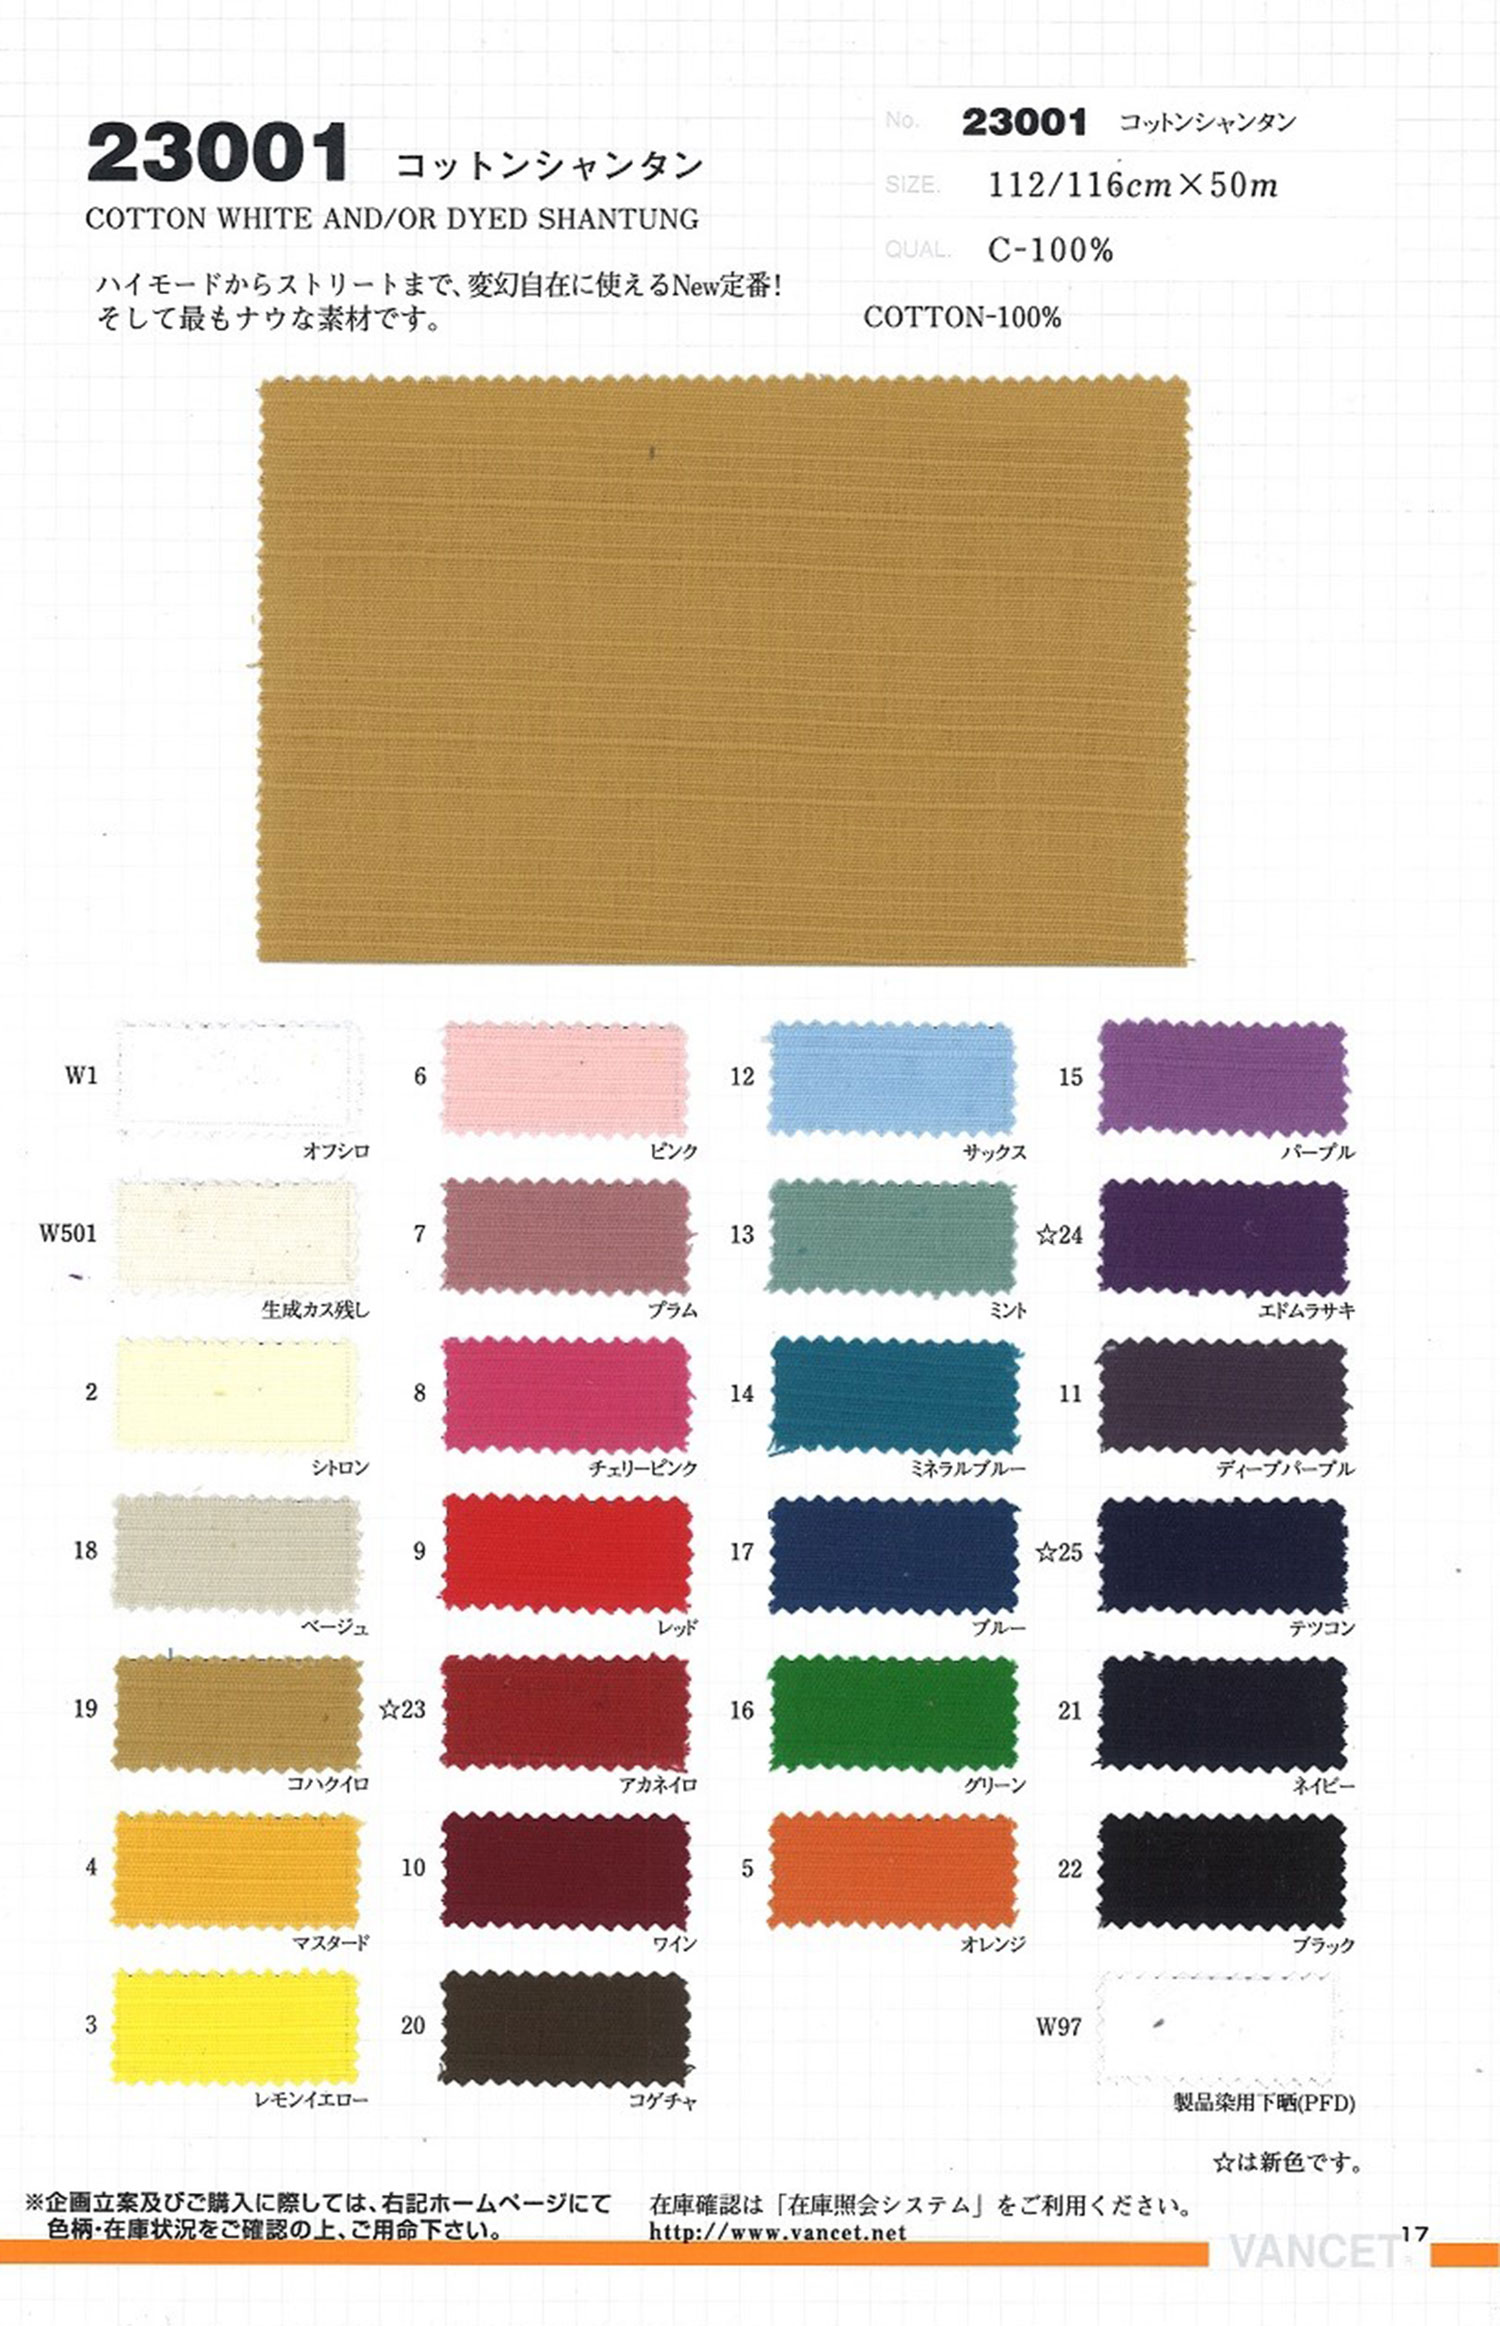 23001 Cotton Shantung[Textile / Fabric] VANCET